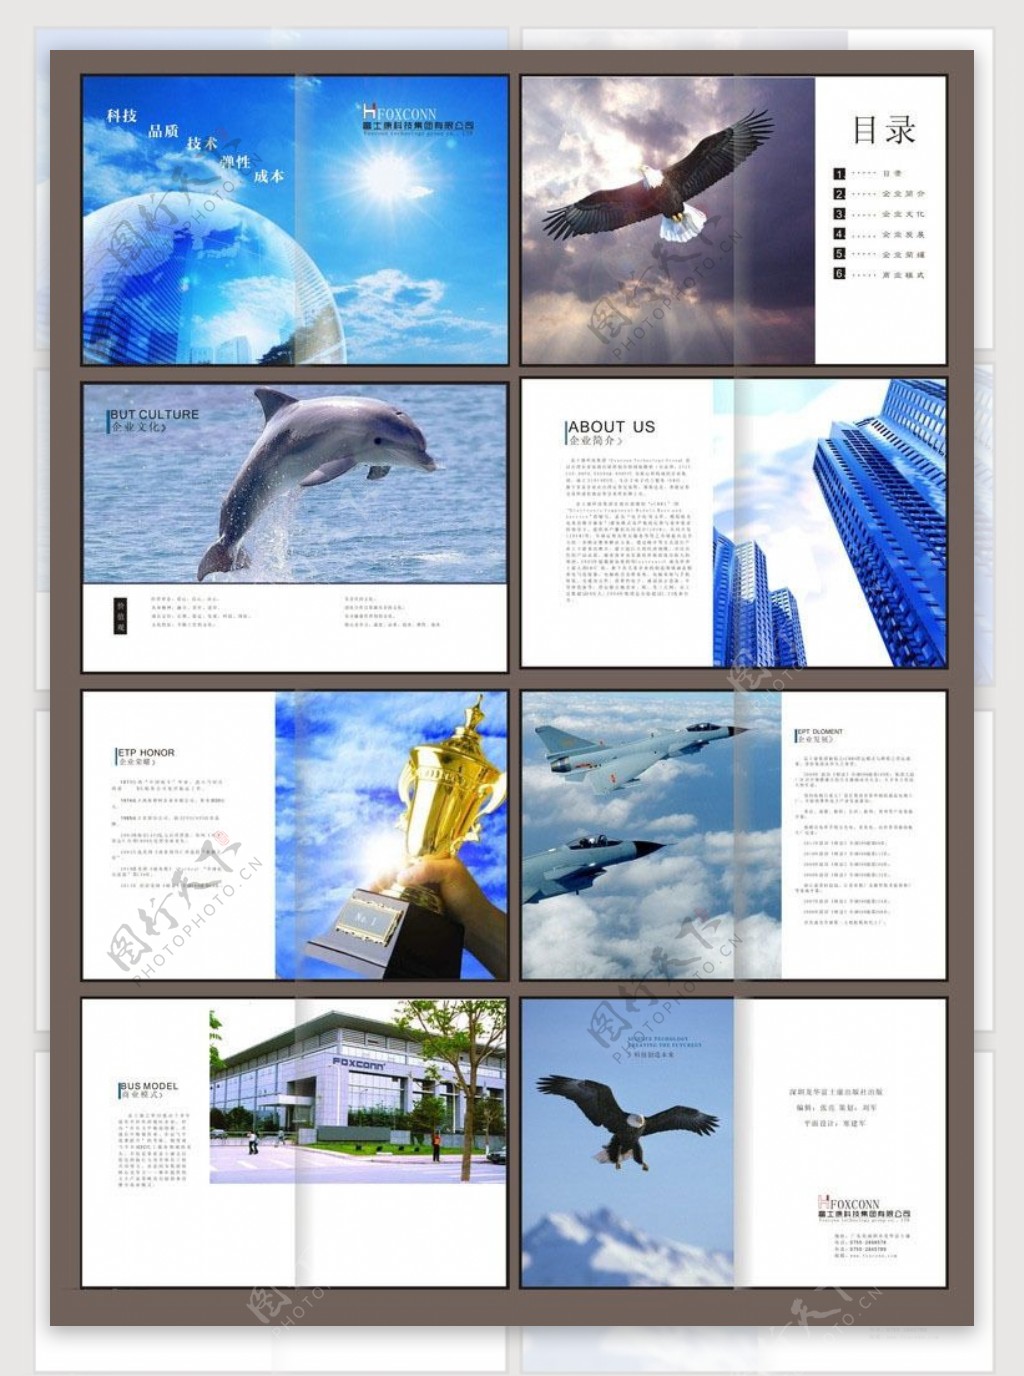 富士康企业宣传画册设计矢量素材